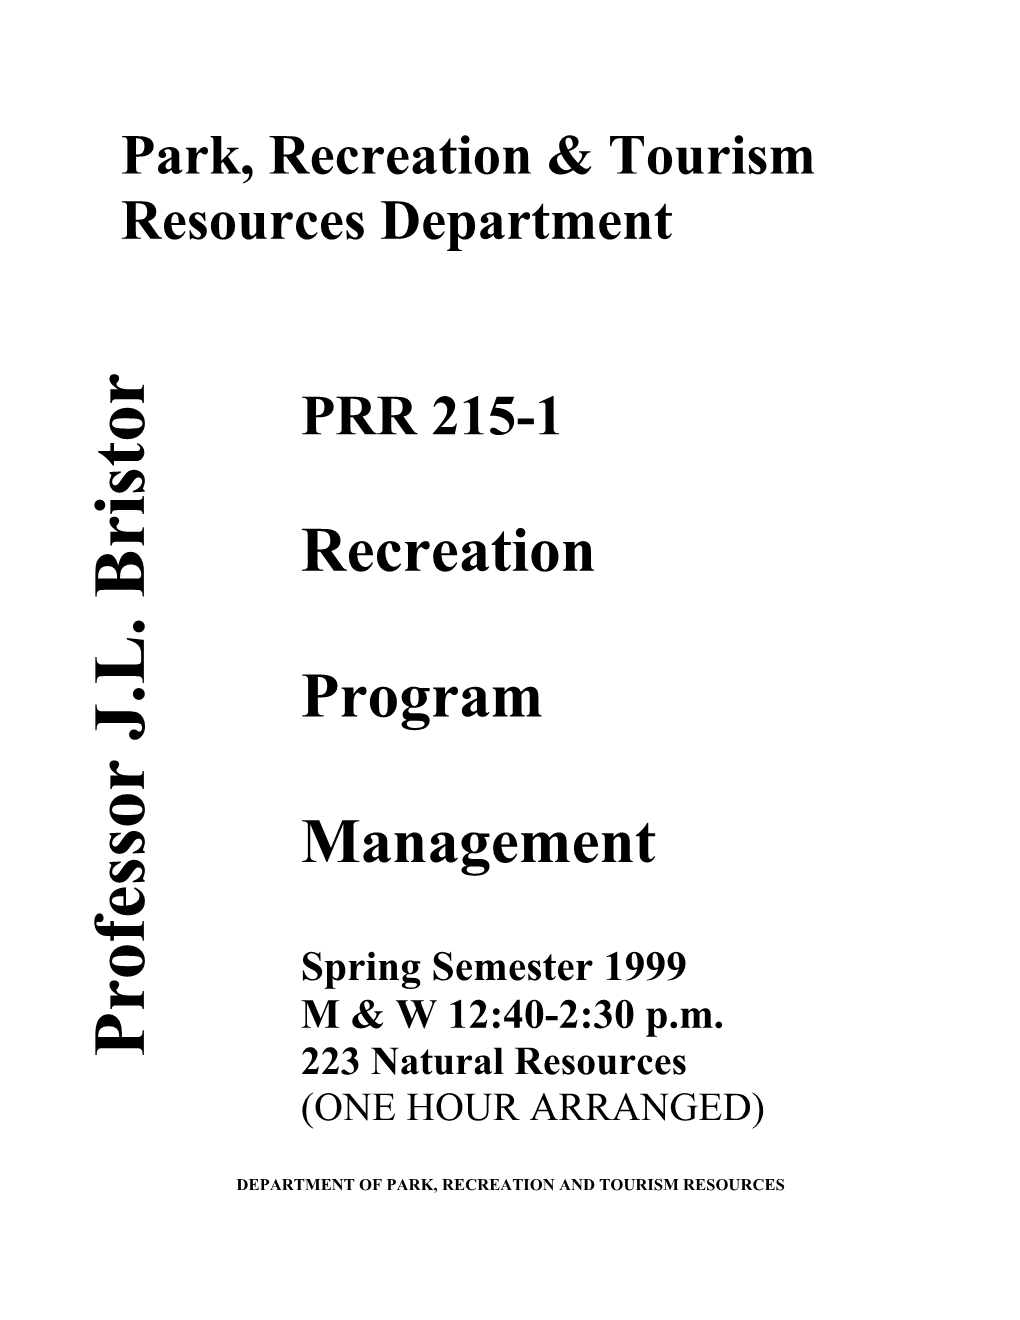 Park, Recreation & Tourism Resources Department